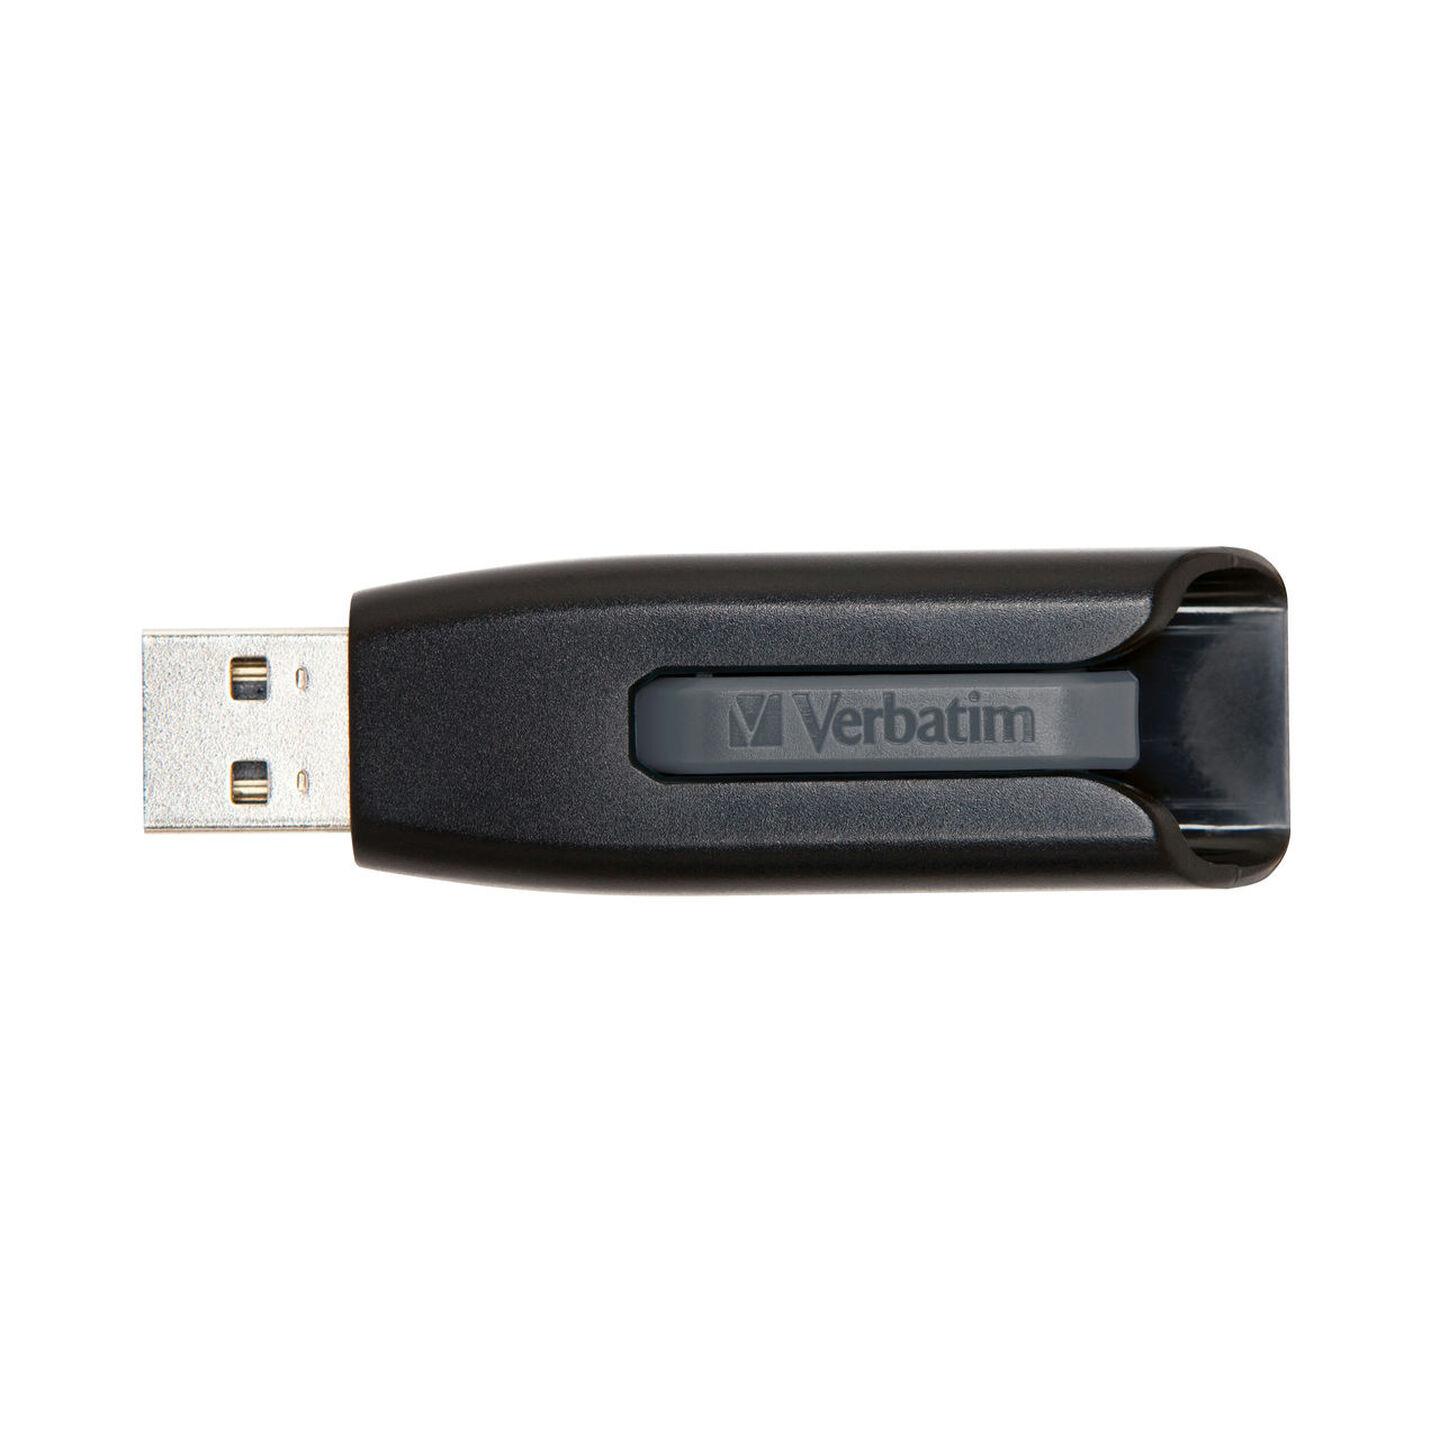 64GB USB 3.0 Flash Drive